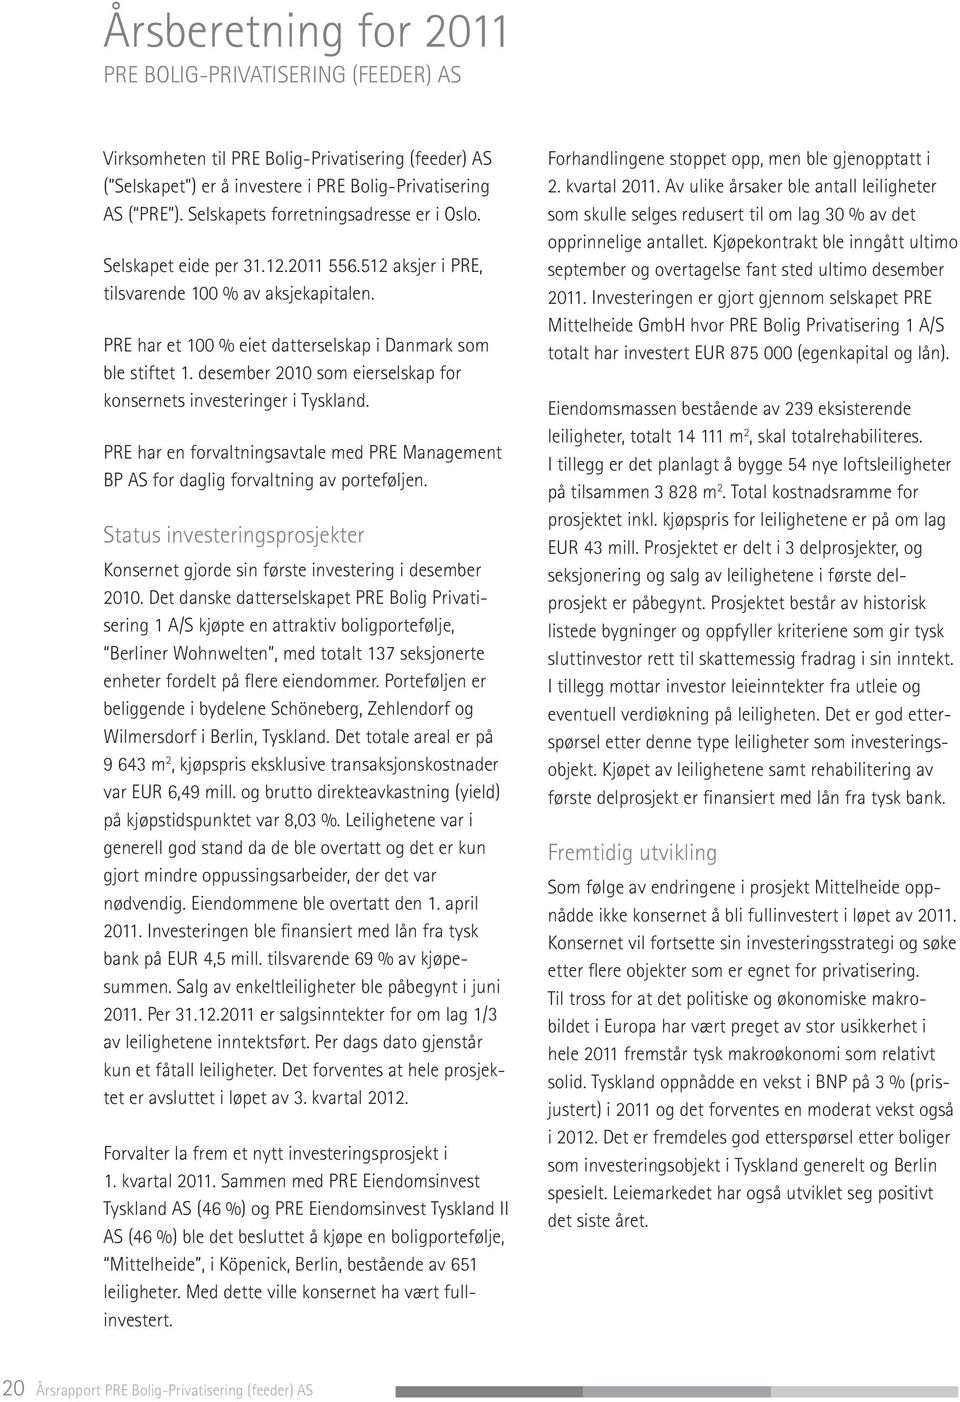 desember 2010 som eierselskap for konsernets investeringer i Tyskland. PRE har en forvaltningsavtale med PRE Management BP AS for daglig forvaltning av porteføljen.